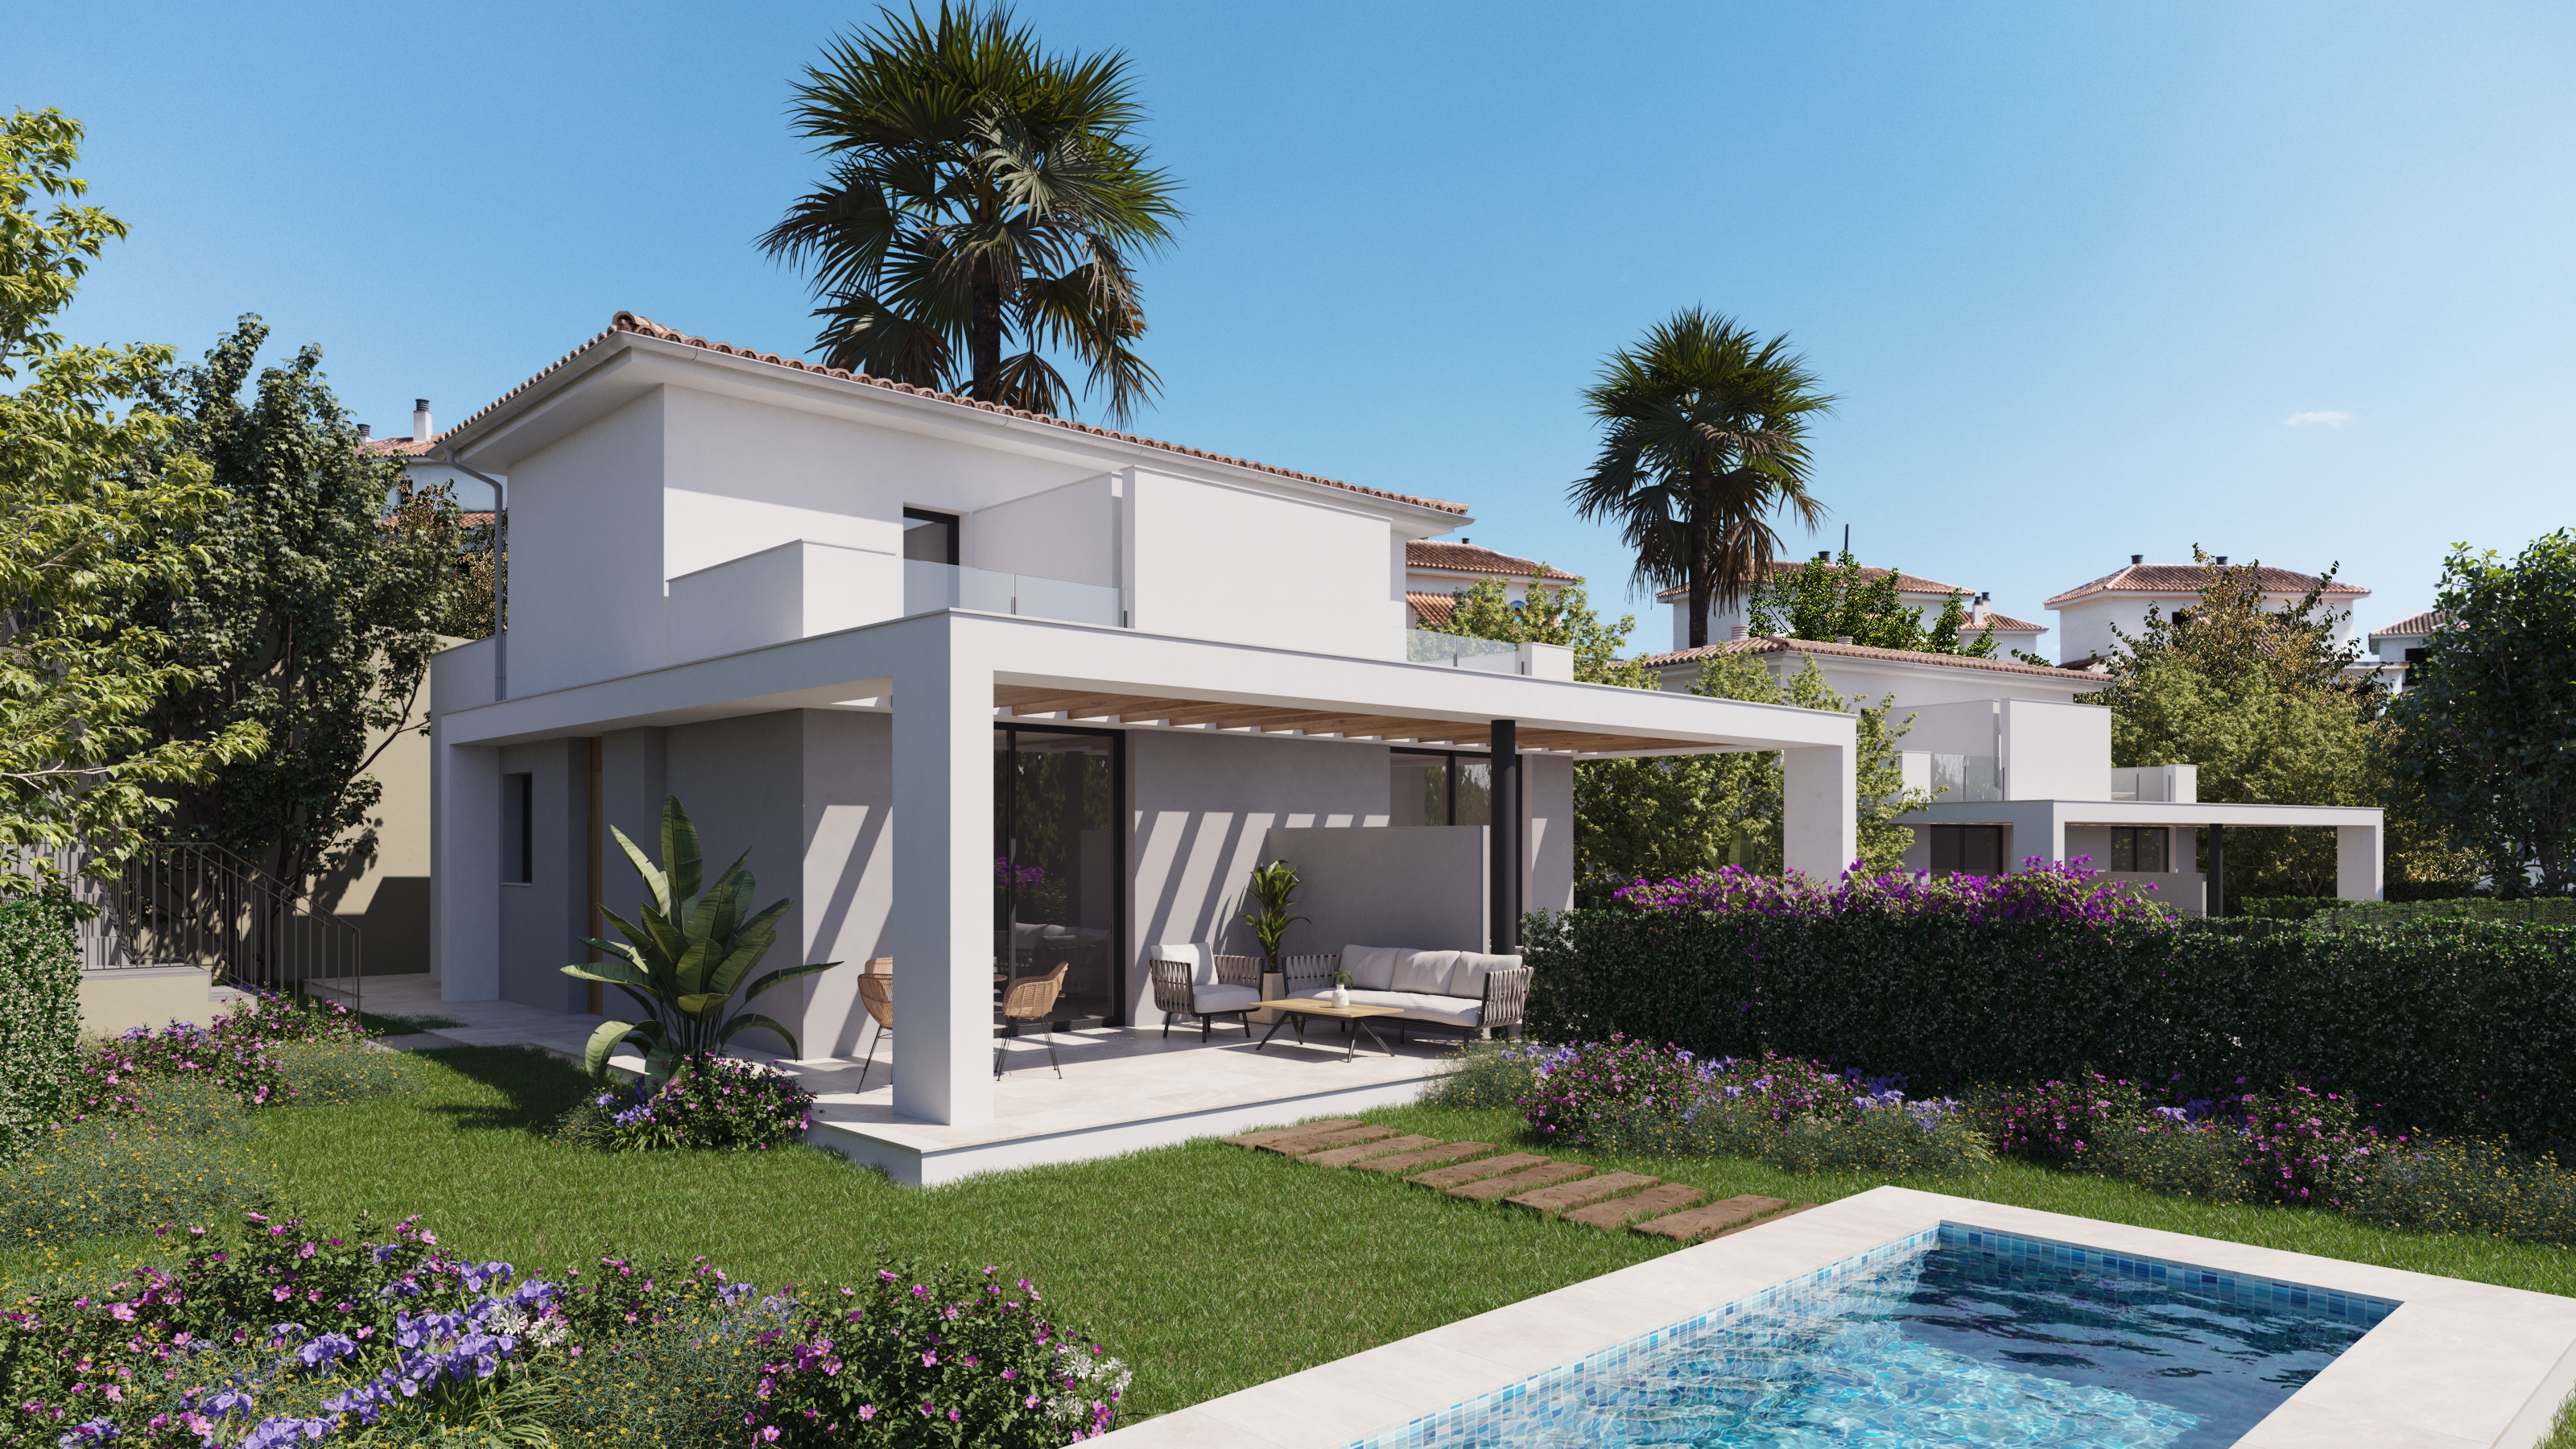 Stunning Semi Detached villas in Mallorca Cala Romantica